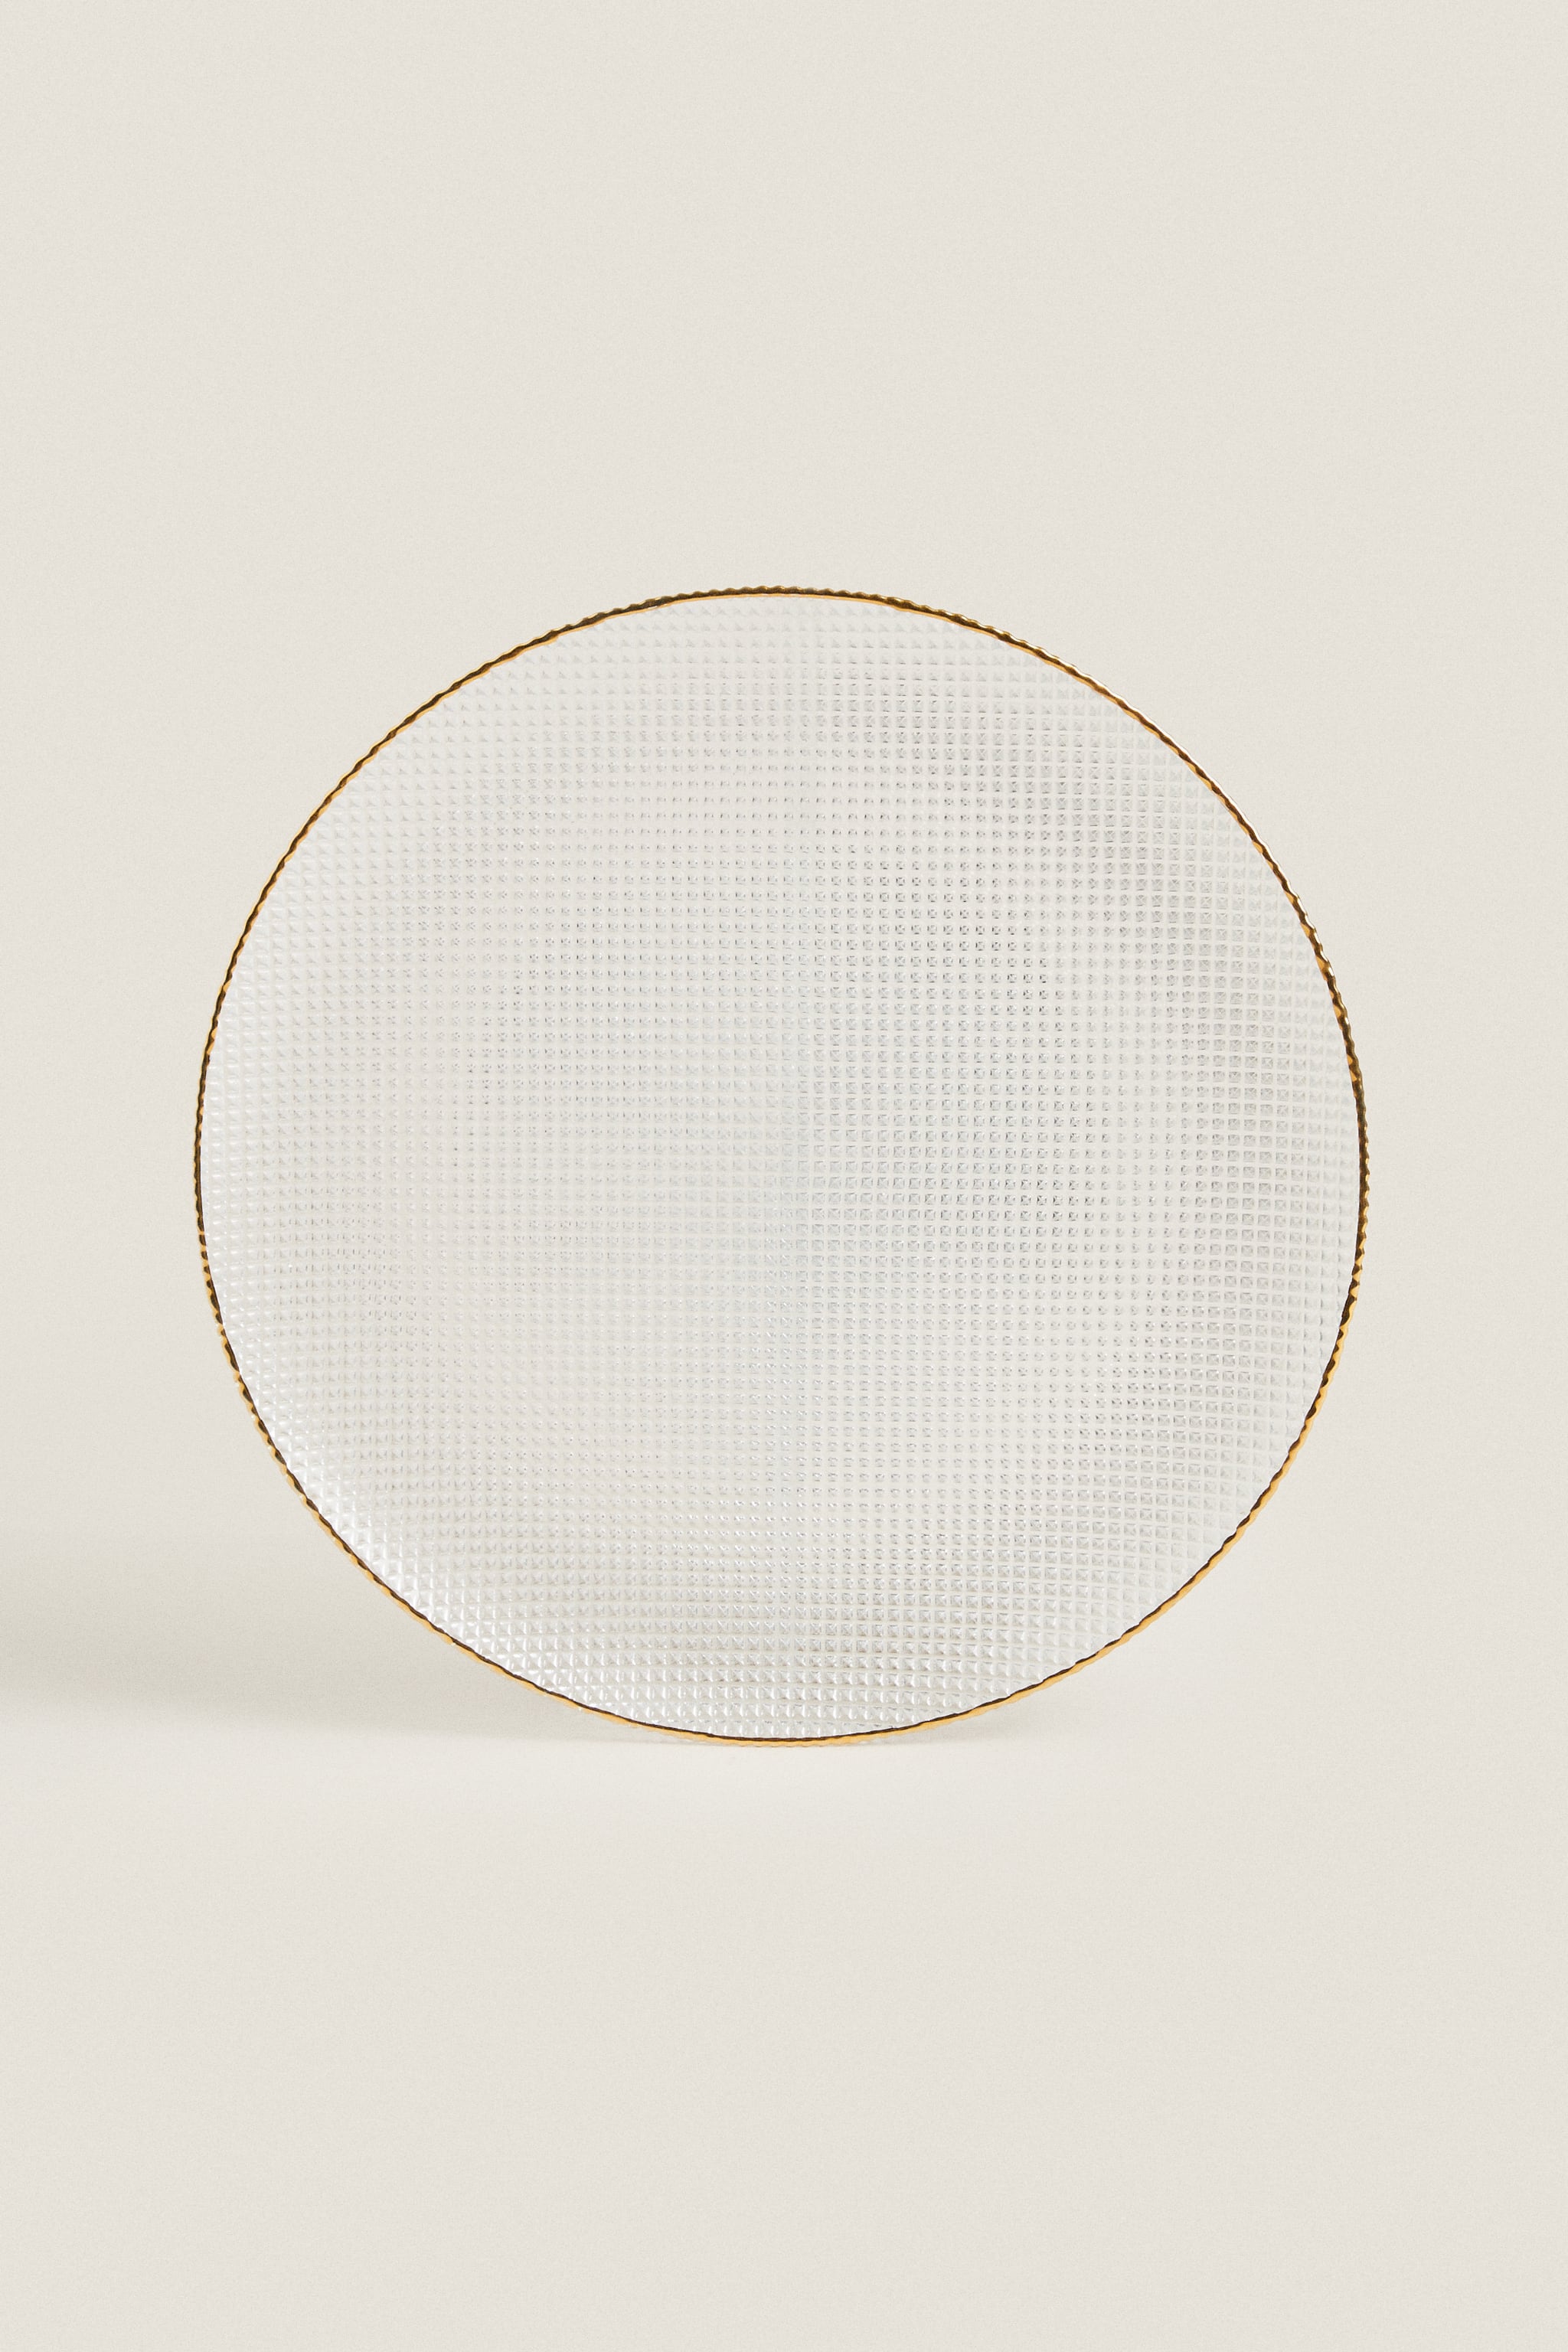 Стеклянная подарочная тарелка с высоким дизайном Zara, золото тарелка стеклянная girasole цвет зеленый диаметр 14 см